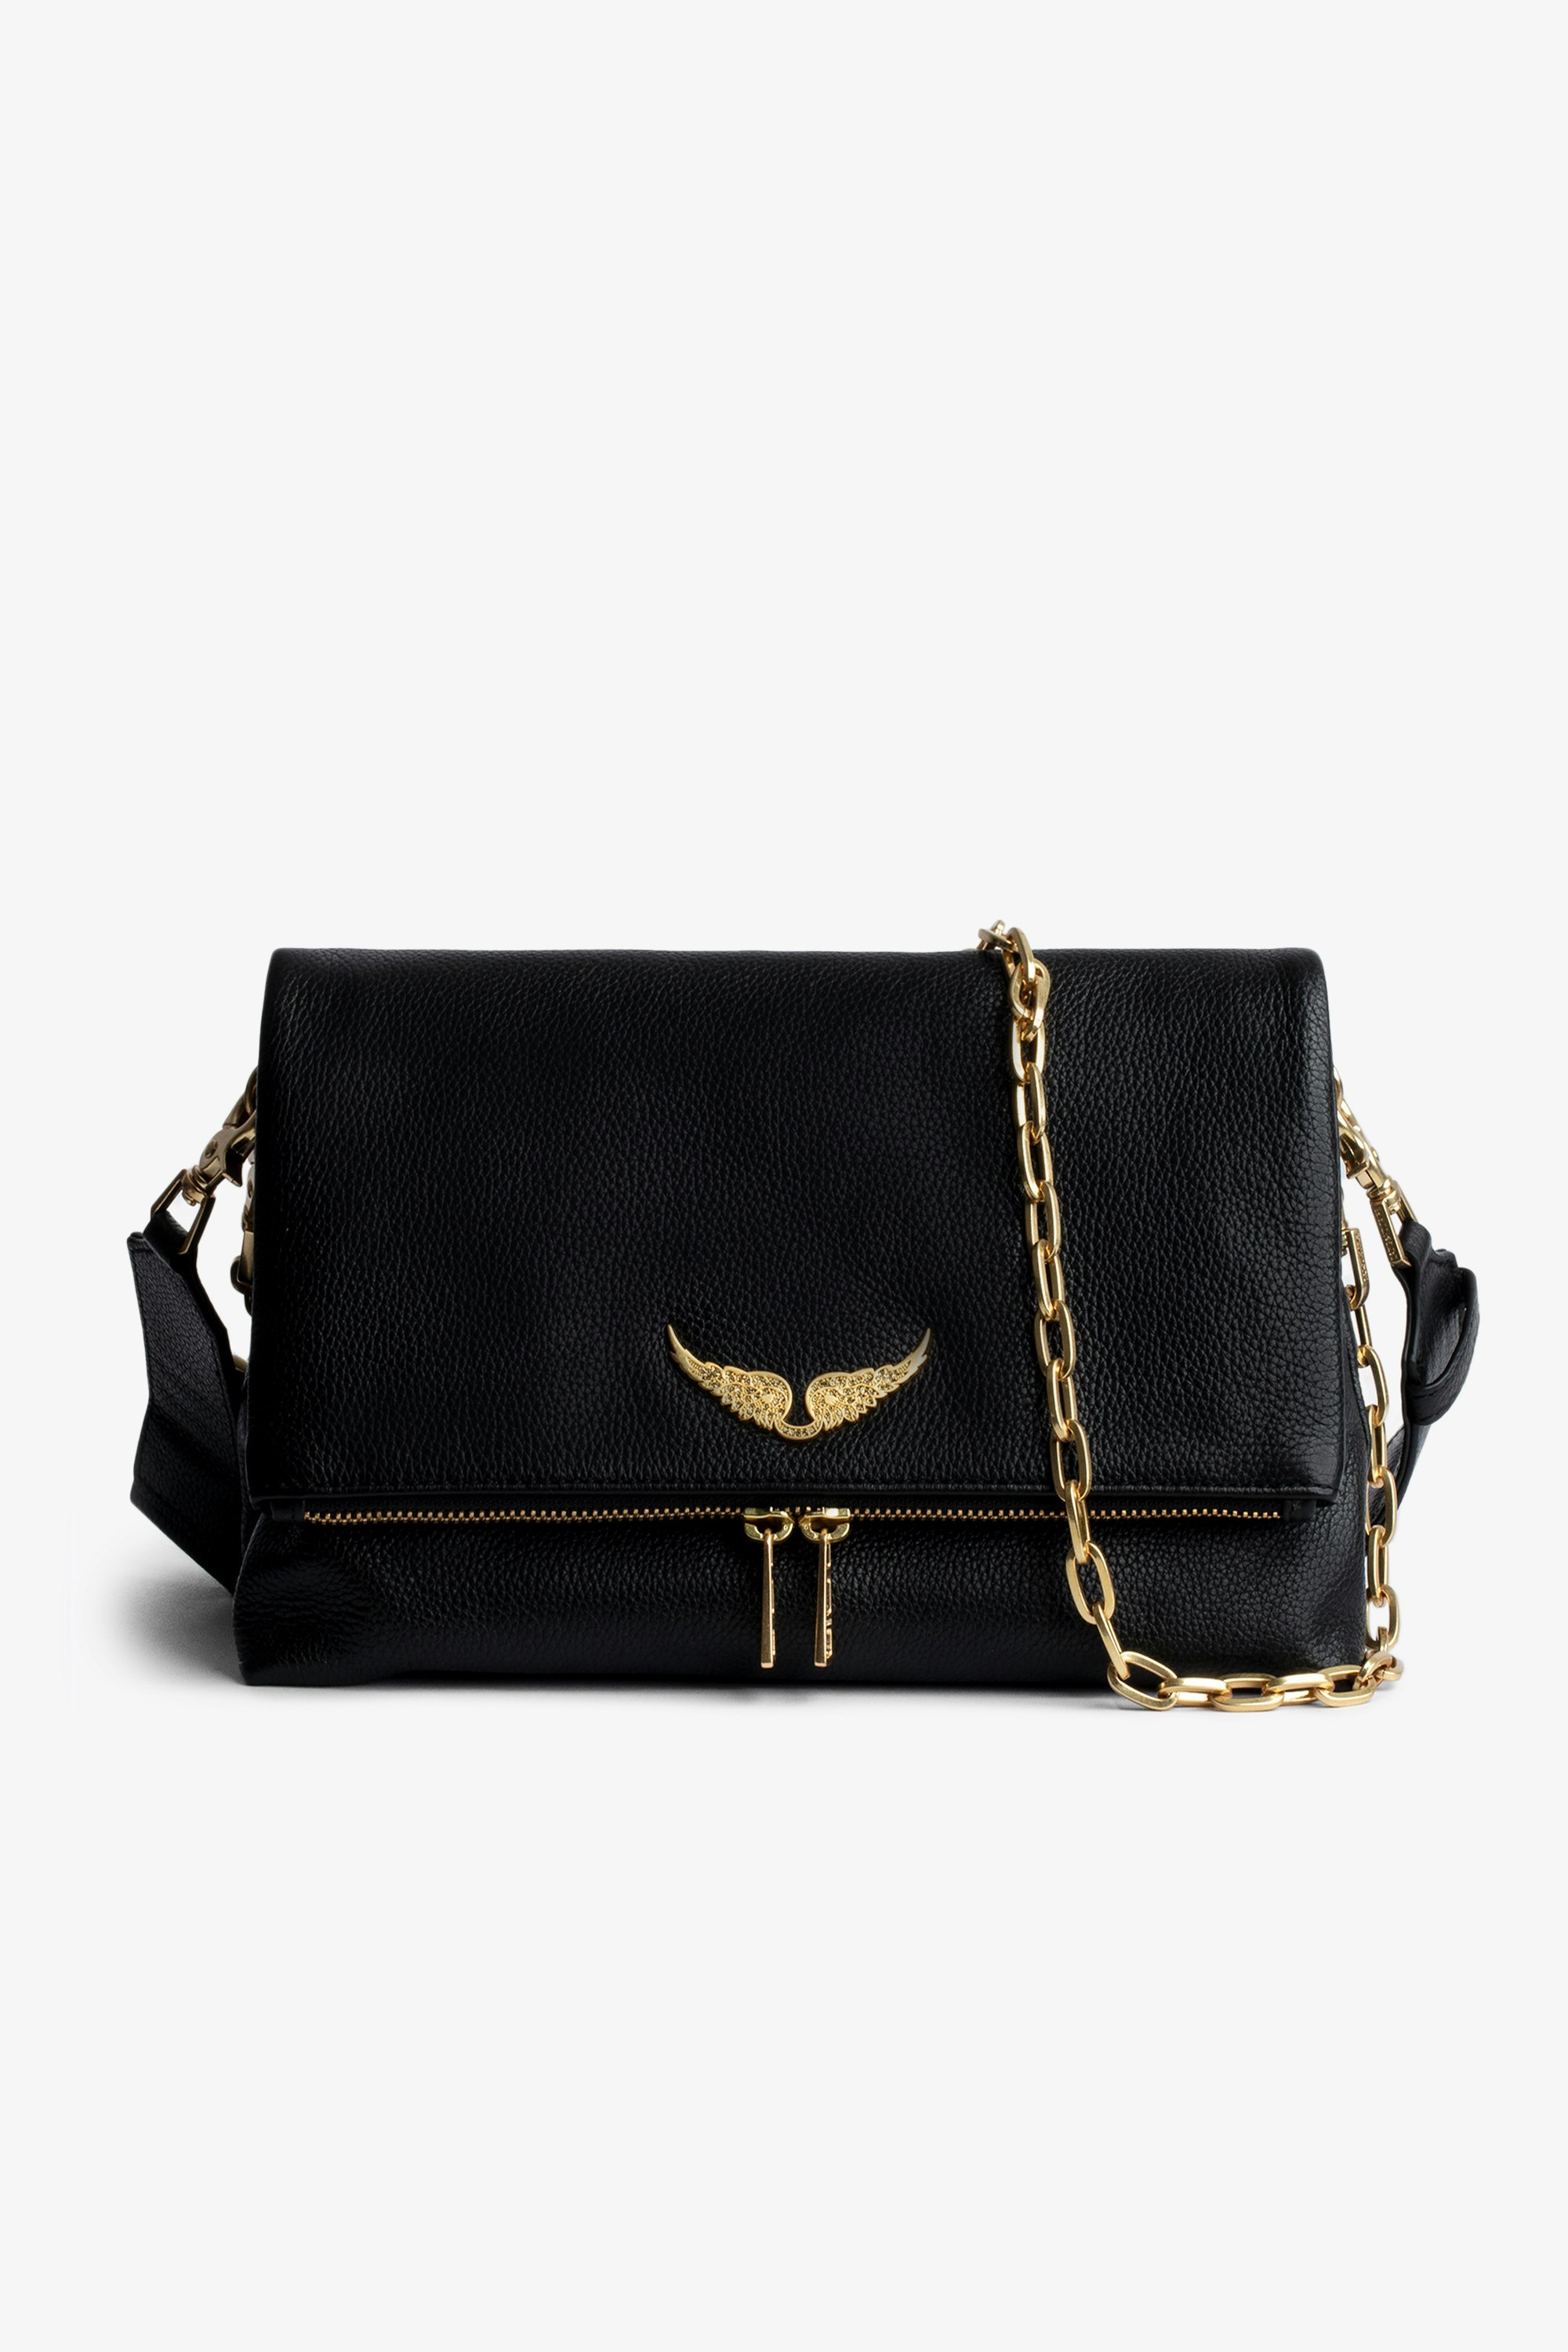 Tasche Rocky Damentasche aus schwarzem genarbtem Leder und goldfarbenen Ketten mit Schulterriemen